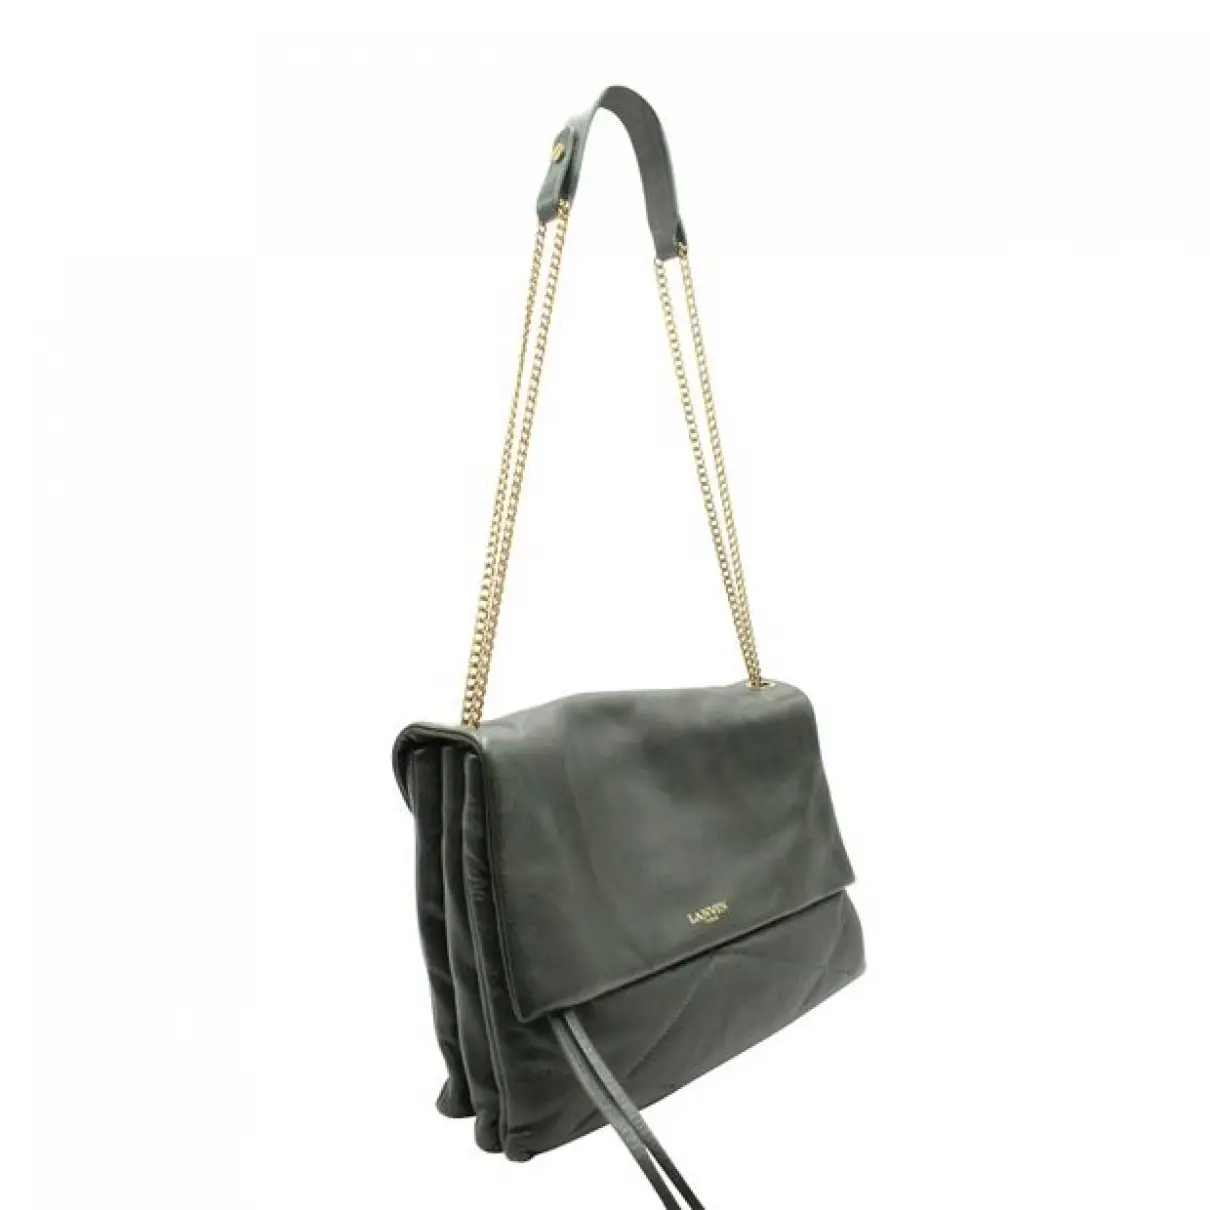 Buy Lanvin Sugar leather handbag online